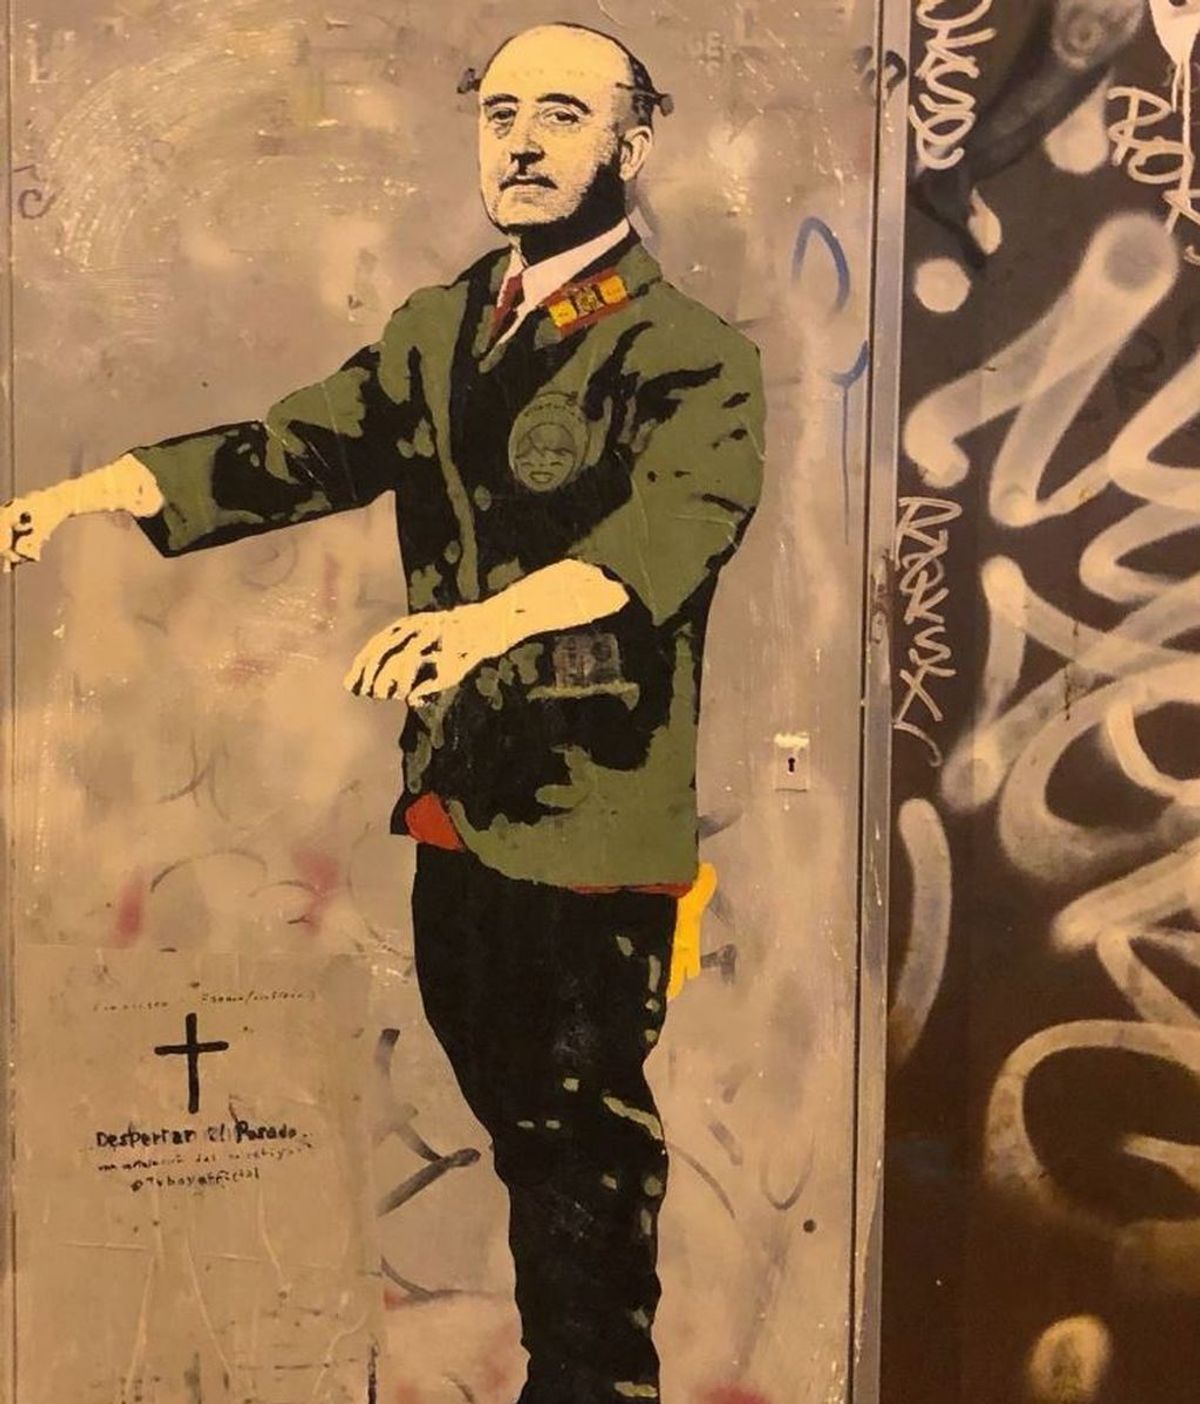 Franco resucita en Barcelona con un grafiti a tamaño natural